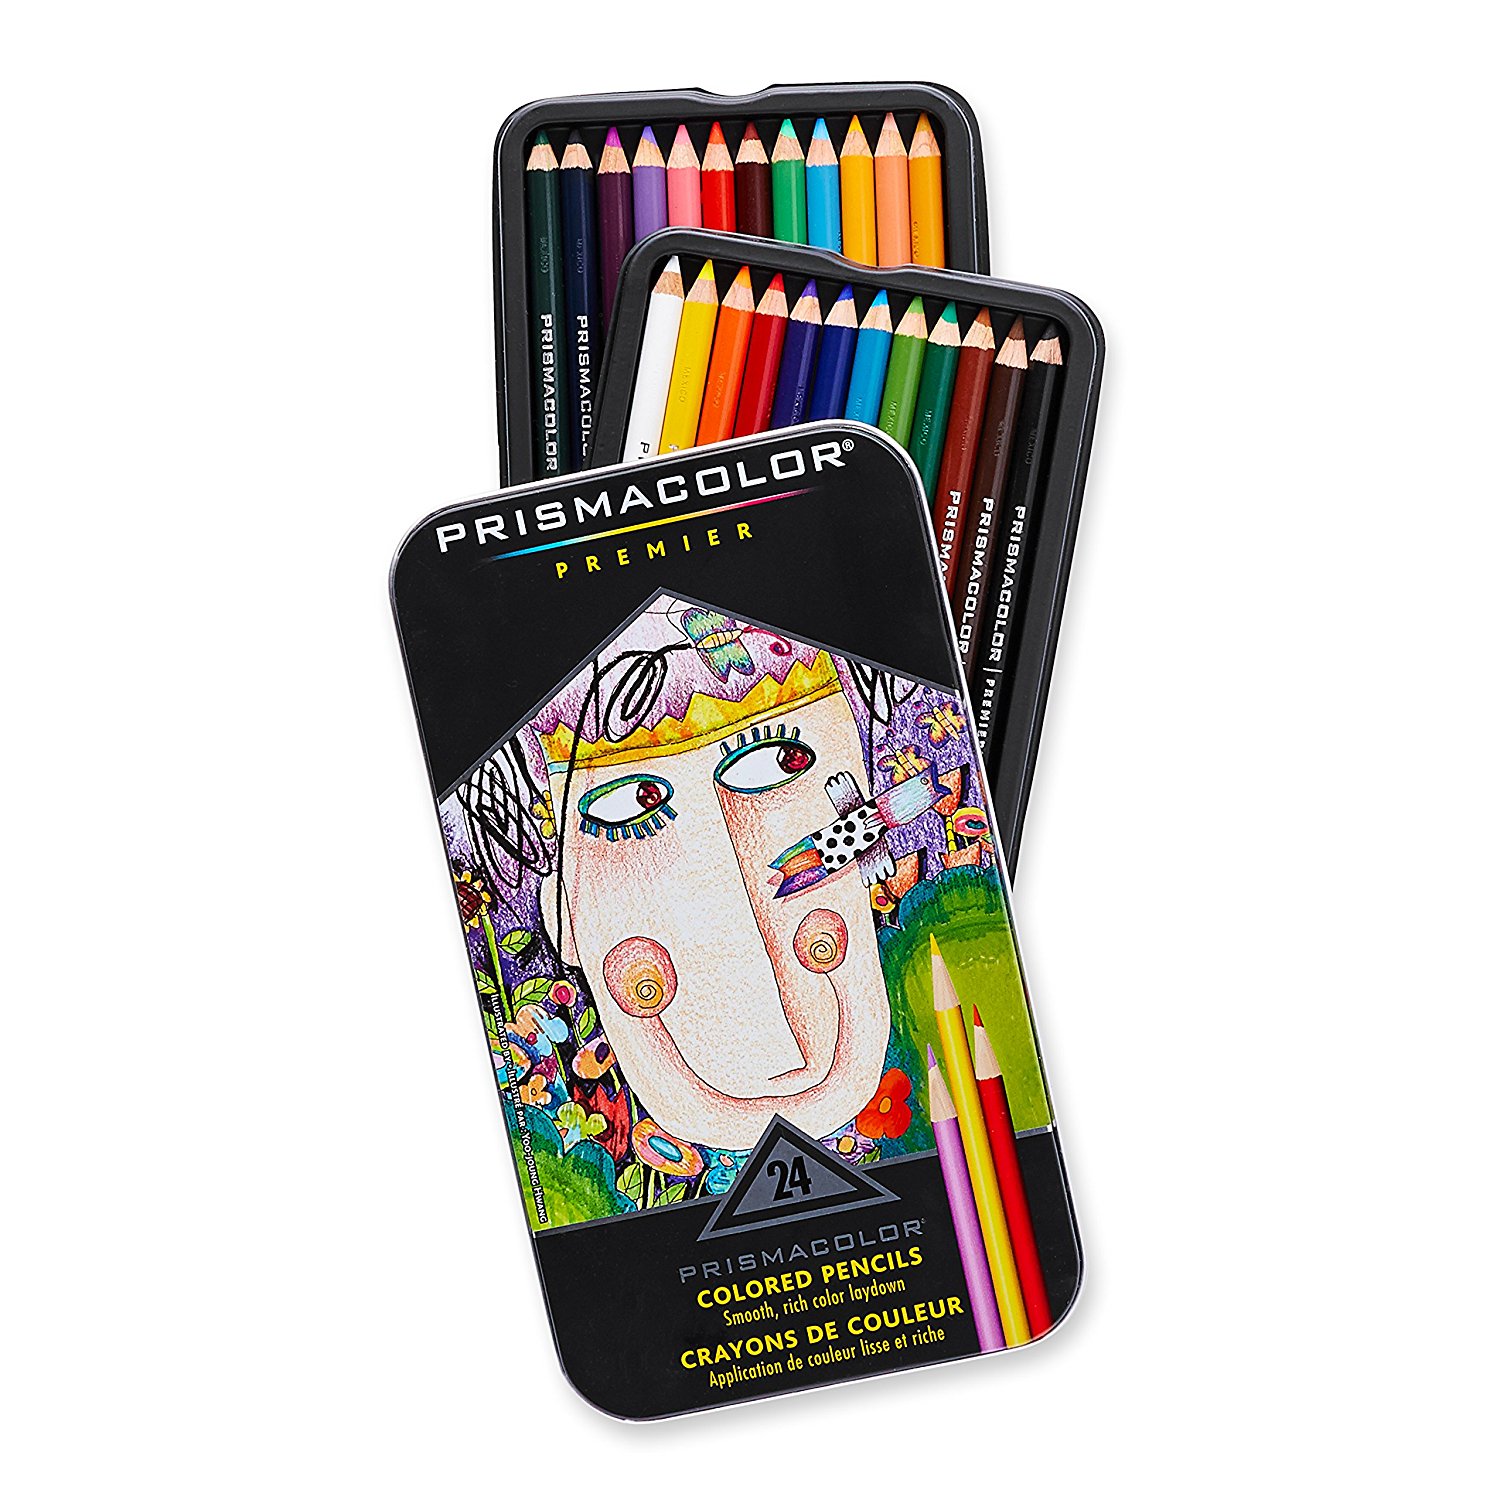 Prismacolor Premier 24Count Colored Pencils $8.33 Shipped (Reg.$38.99